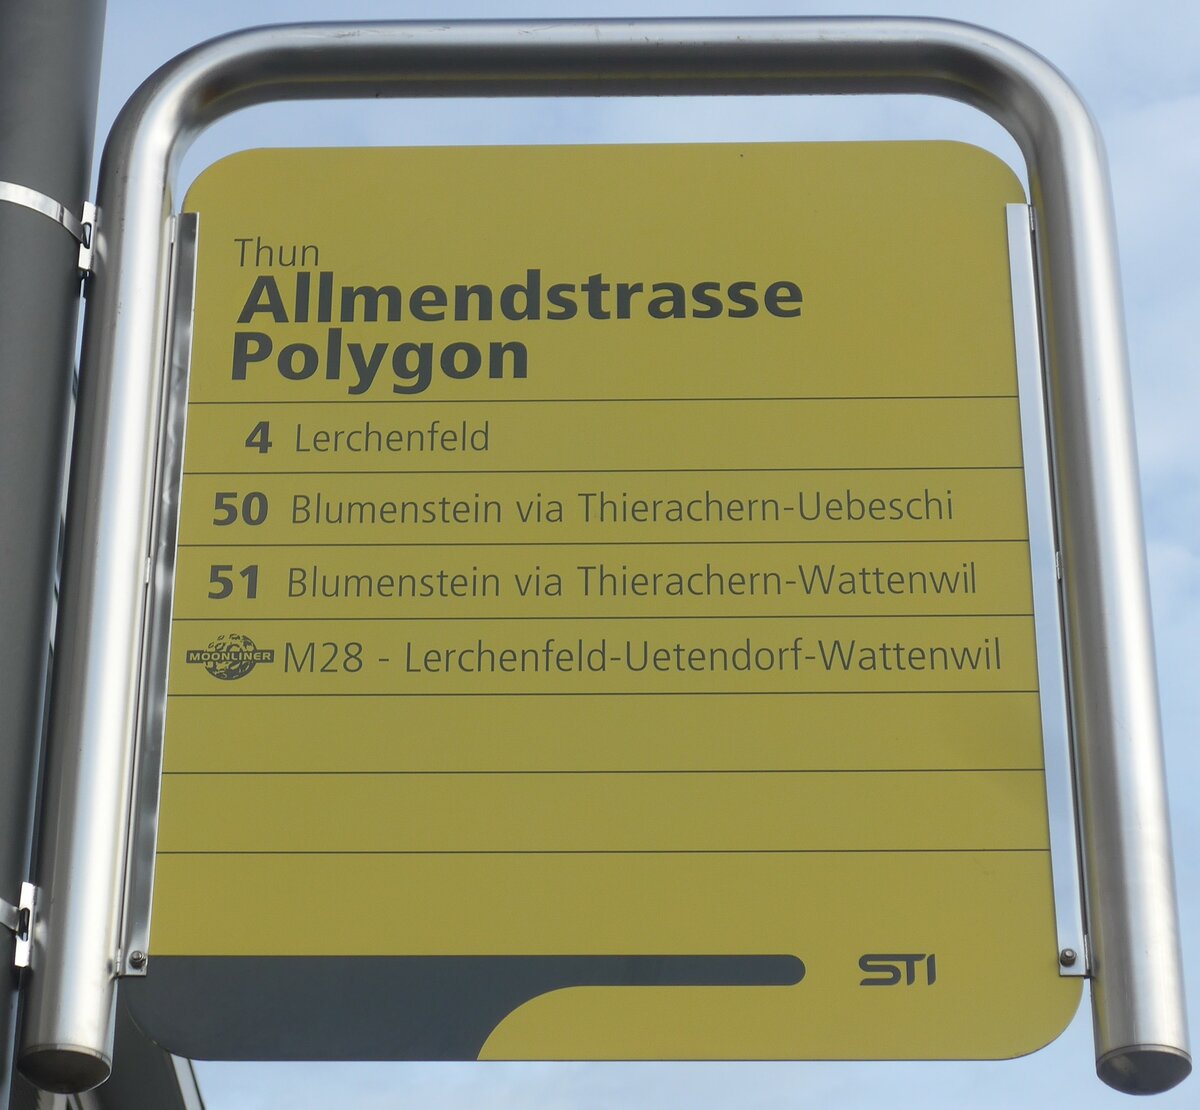 (223'019) - STI-Haltestellenschild - Thun, Allmendstrasse Polygon - am 14. Dezember 2020